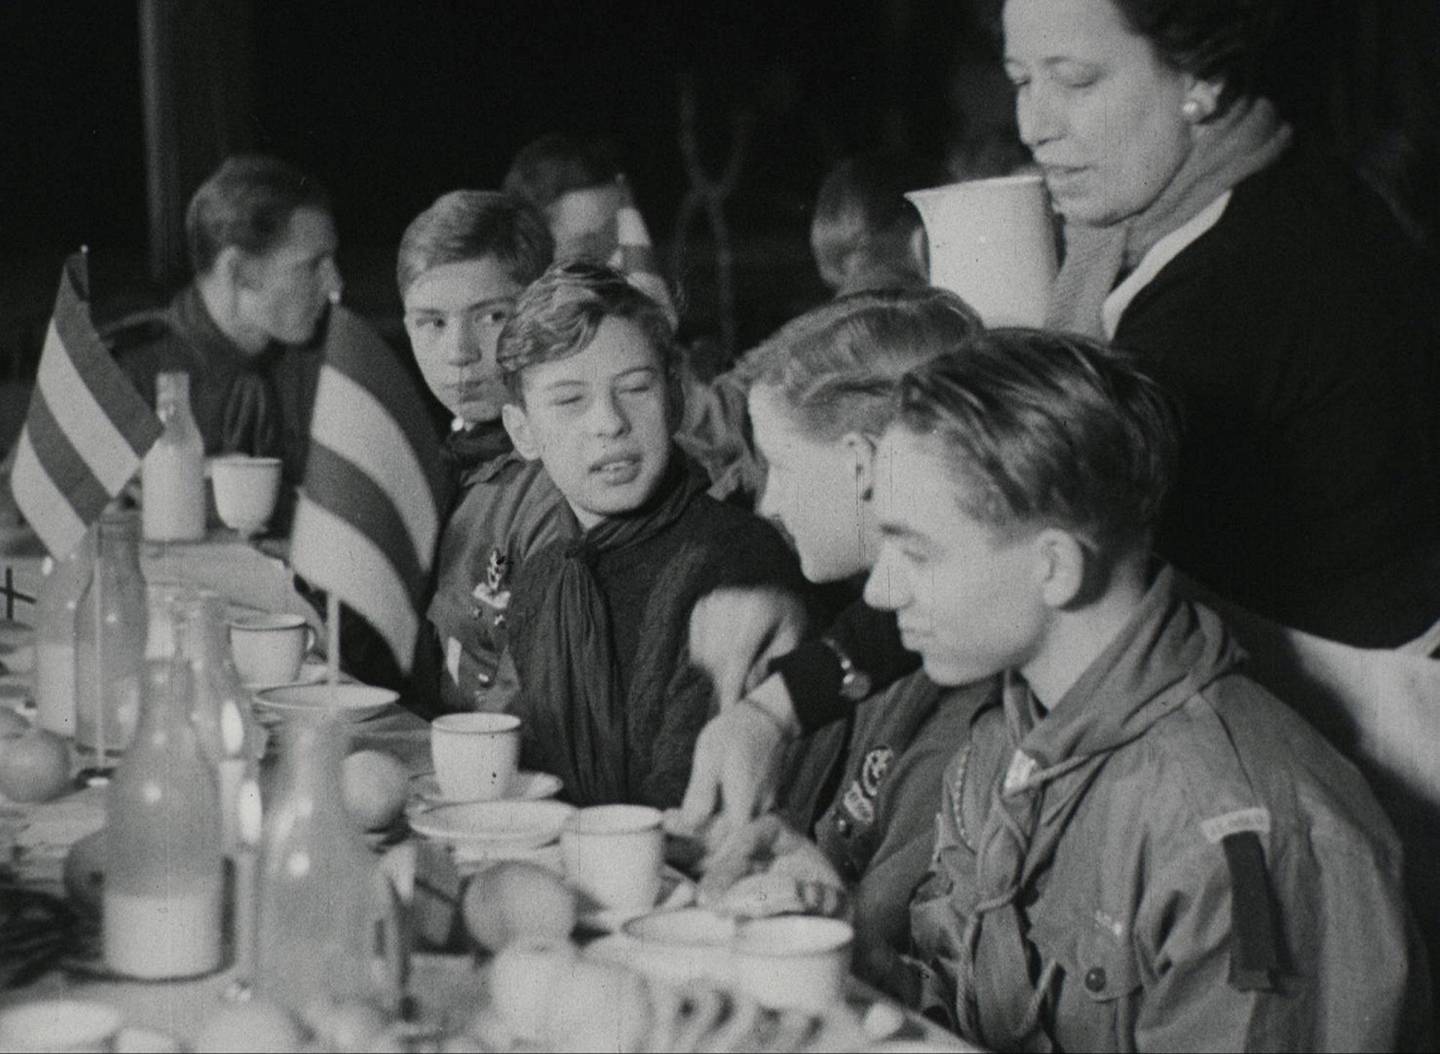 En tropp med danske speidere på Norgesbesøk i 1938 fikk prøvesmake denne berømte Oslofrokosten. Prøvesmakinga ble vist på Paladsteateret kino på Karl Johan som del av de populære